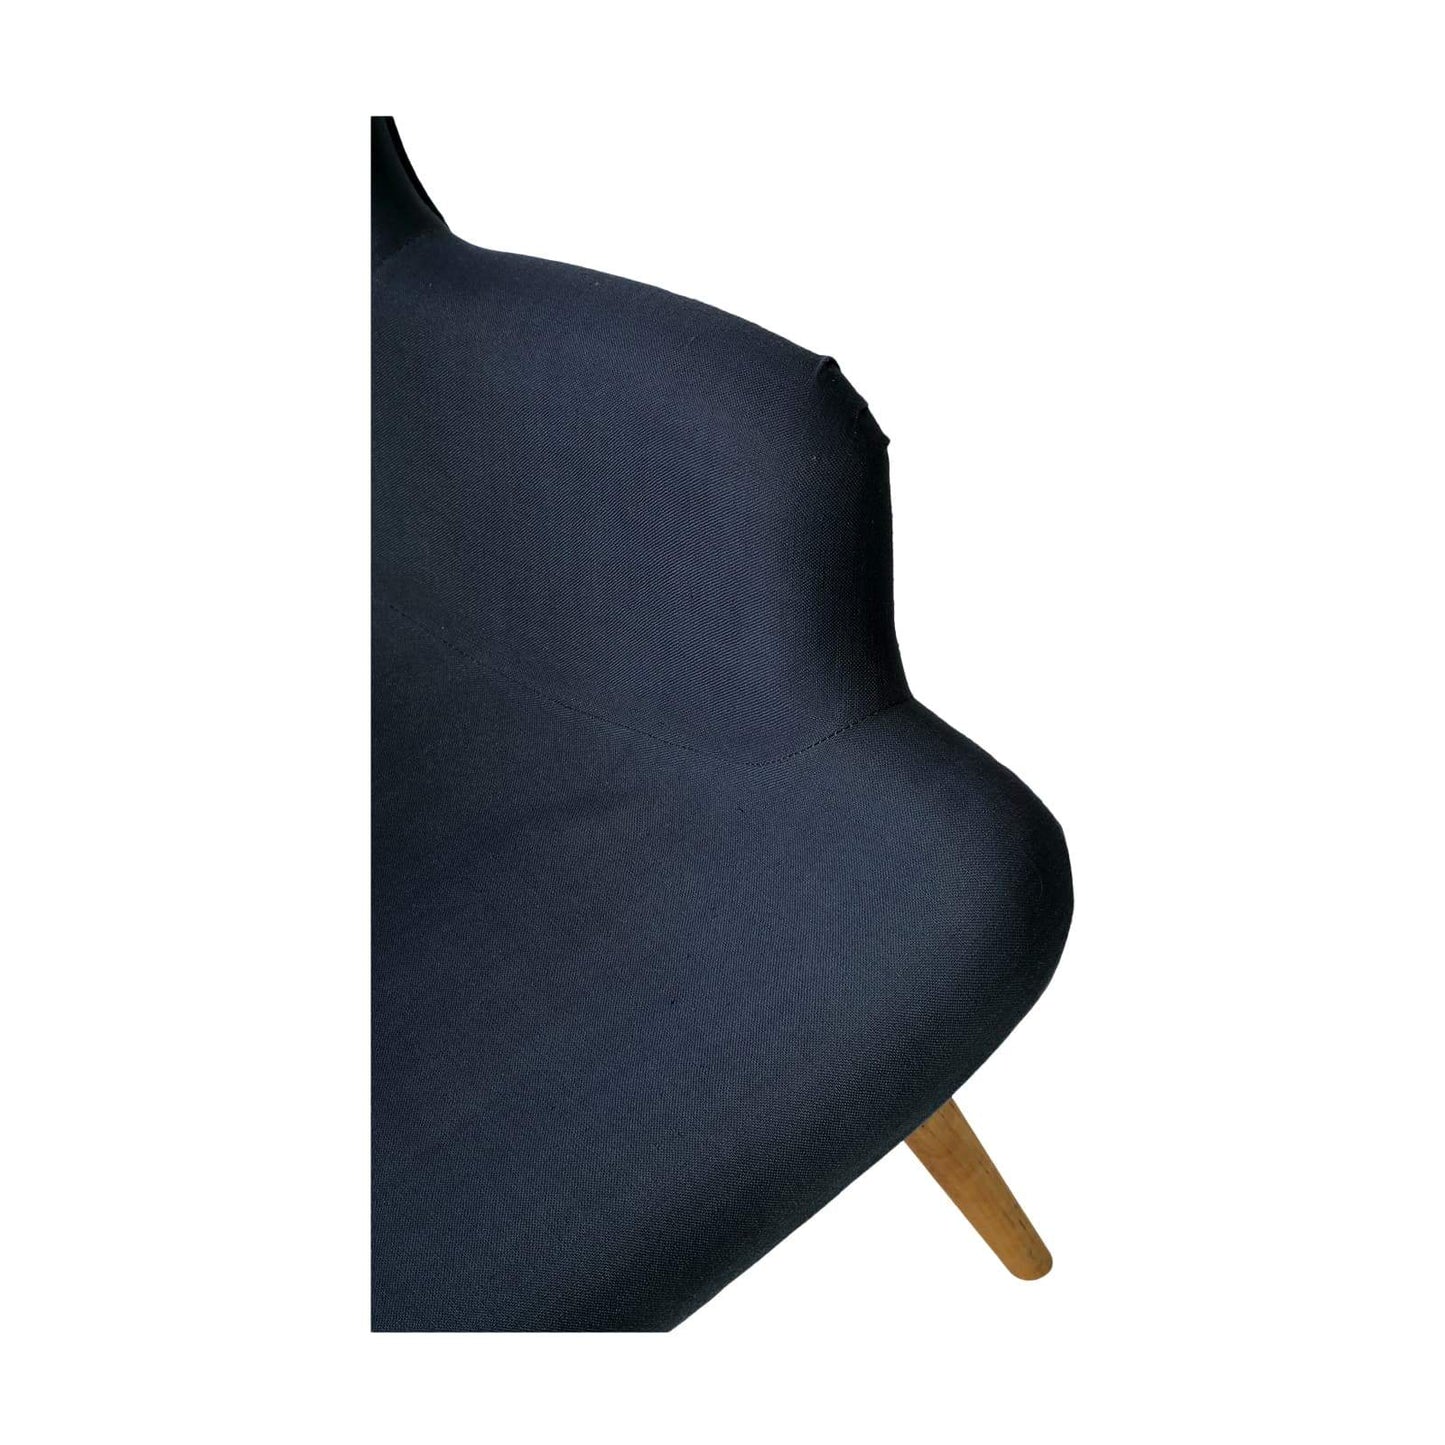 Fauteuil design scandinave d'occasion - Esprit vintage-Bluedigo